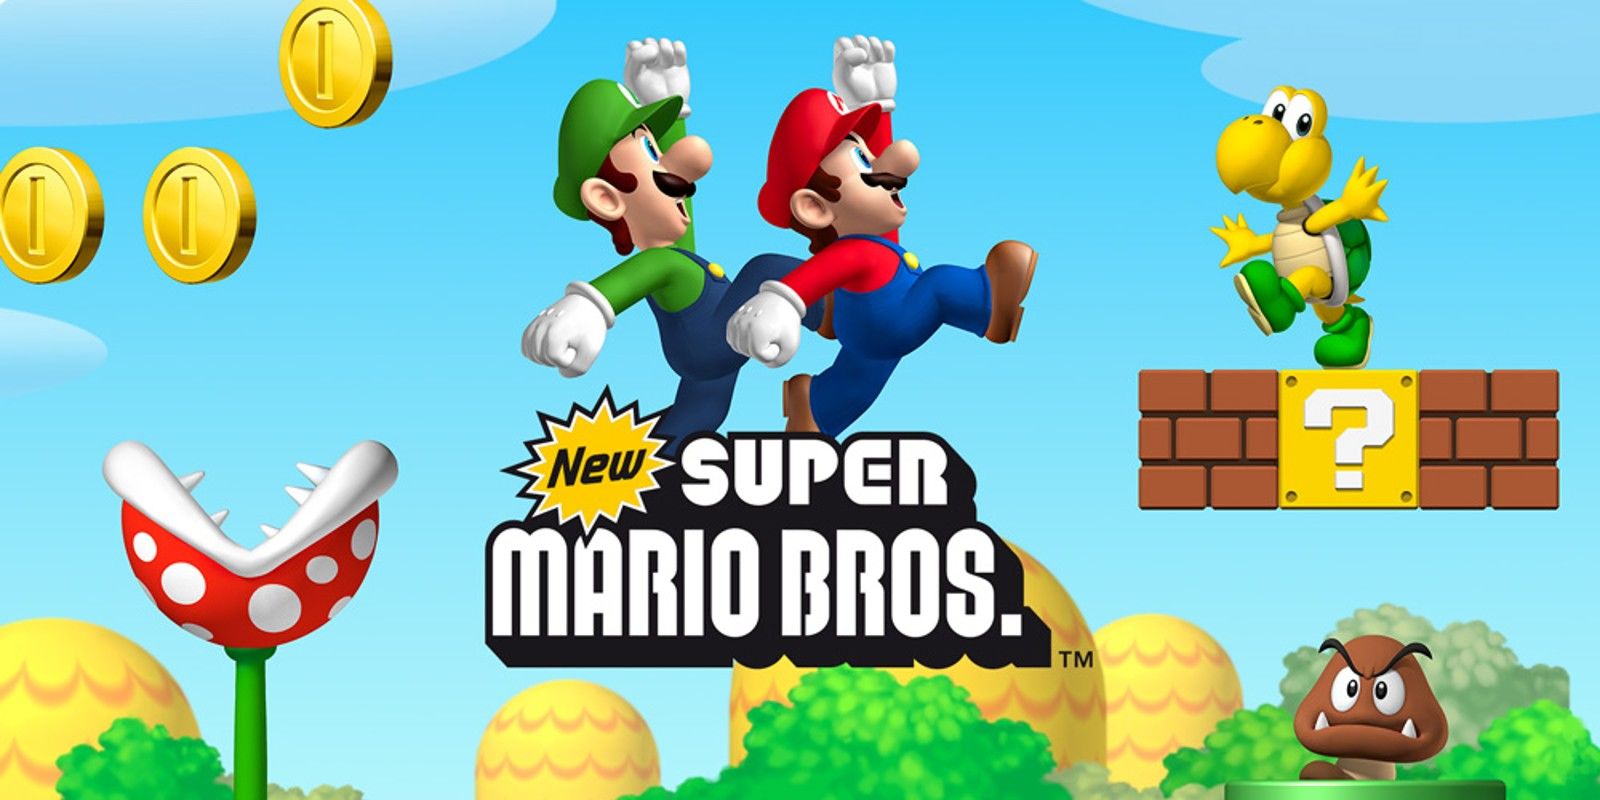 Крис Пратт и Аня Тейлор‑Джой озвучат героев экранизации Super Mario Bros.